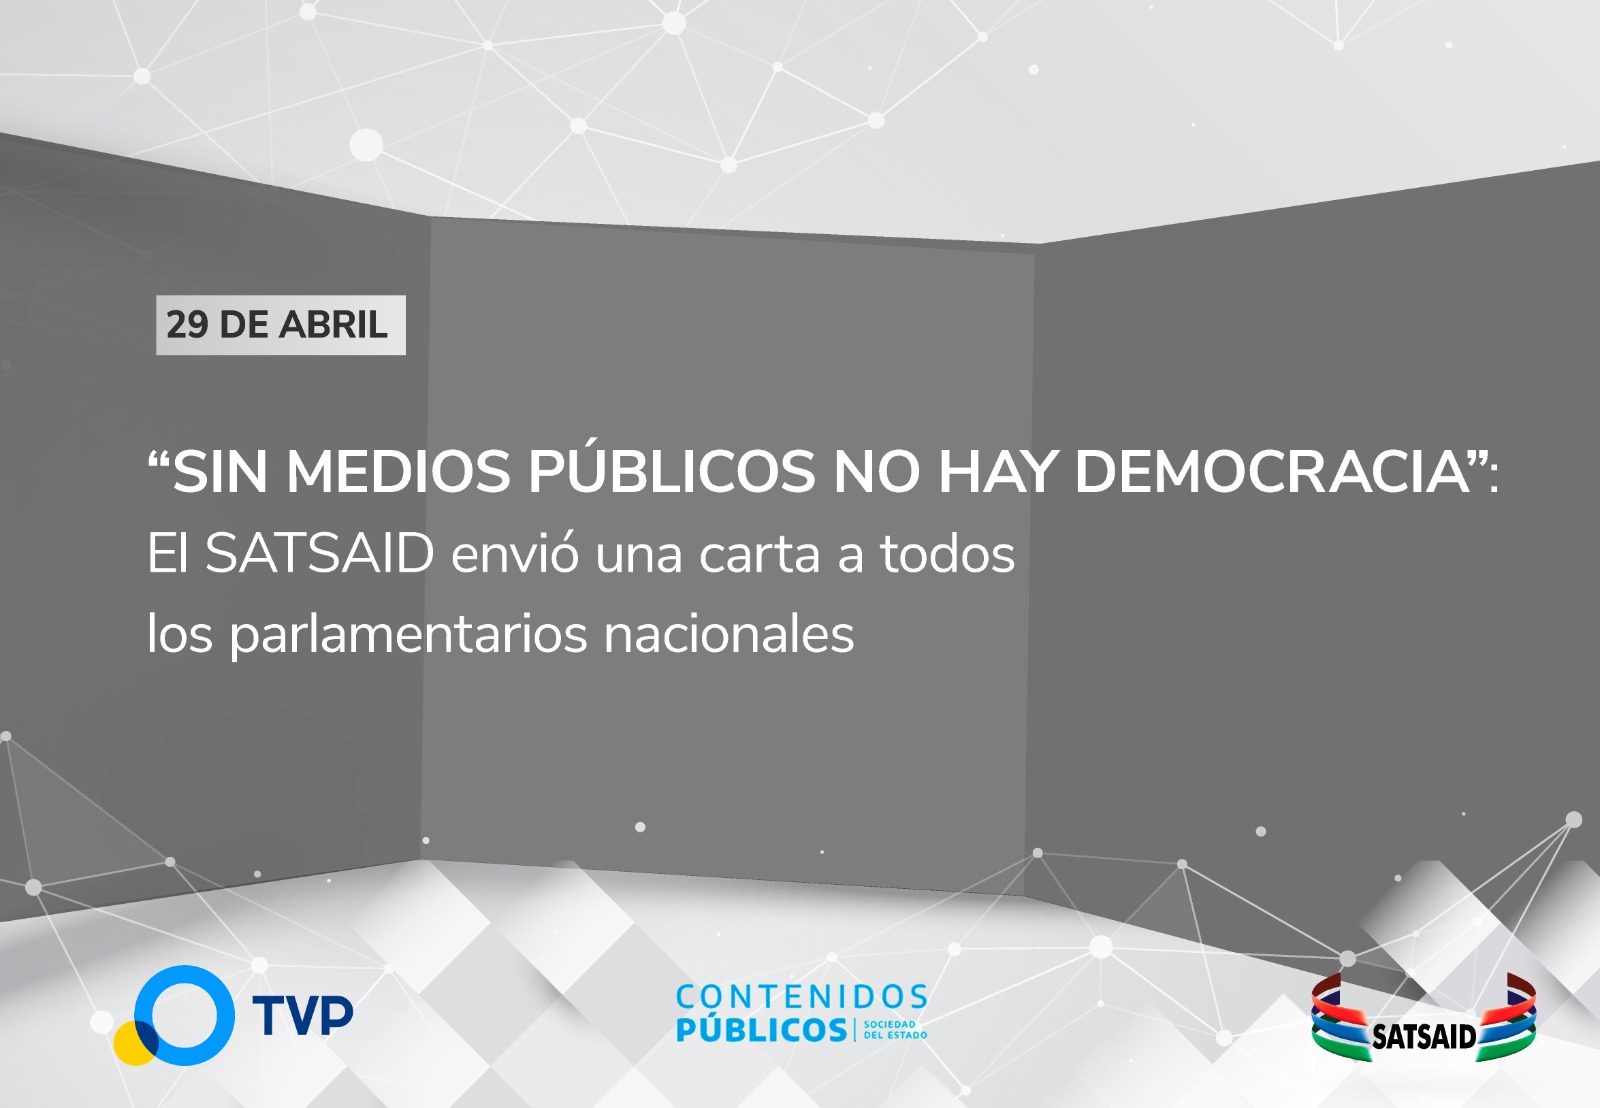 “SIN MEDIOS PÚBLICOS NO HAY DEMOCRACIA”: EL SATSAID ENVIÓ UNA CARTA A TODOS LOS PARLAMENTARIOS NACIONALES Y GOBERNADORES 